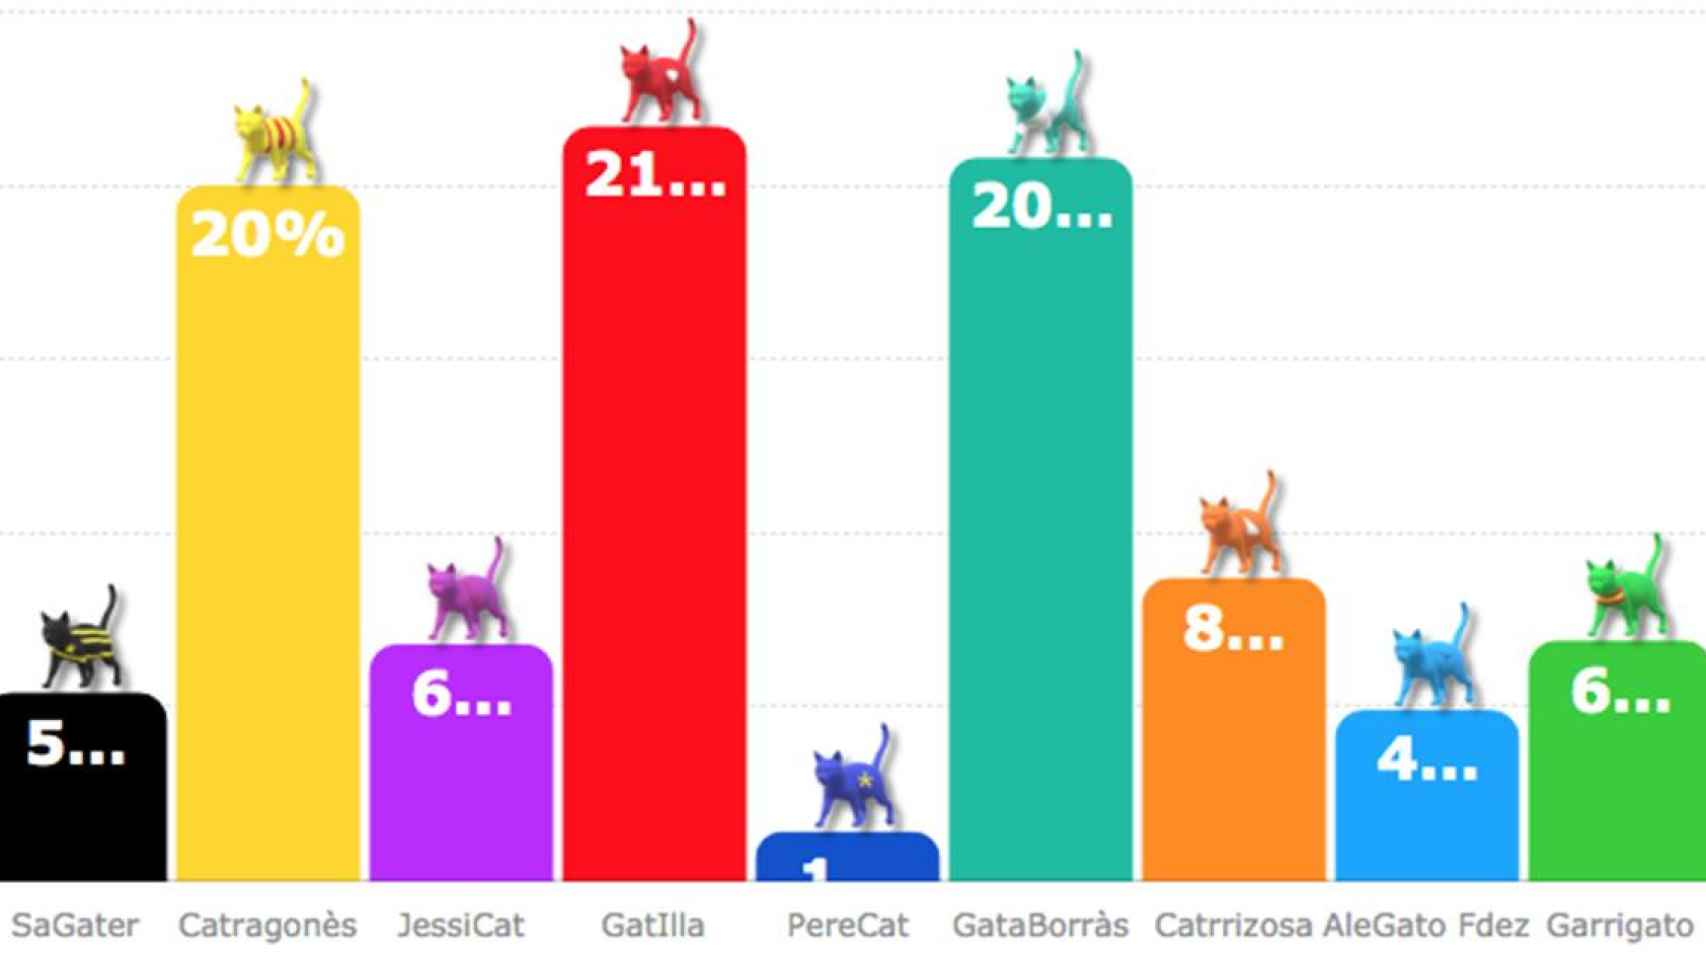 La encuesta de Electomanía, que sustituye los nombres de los candidatos por apodos gatunos